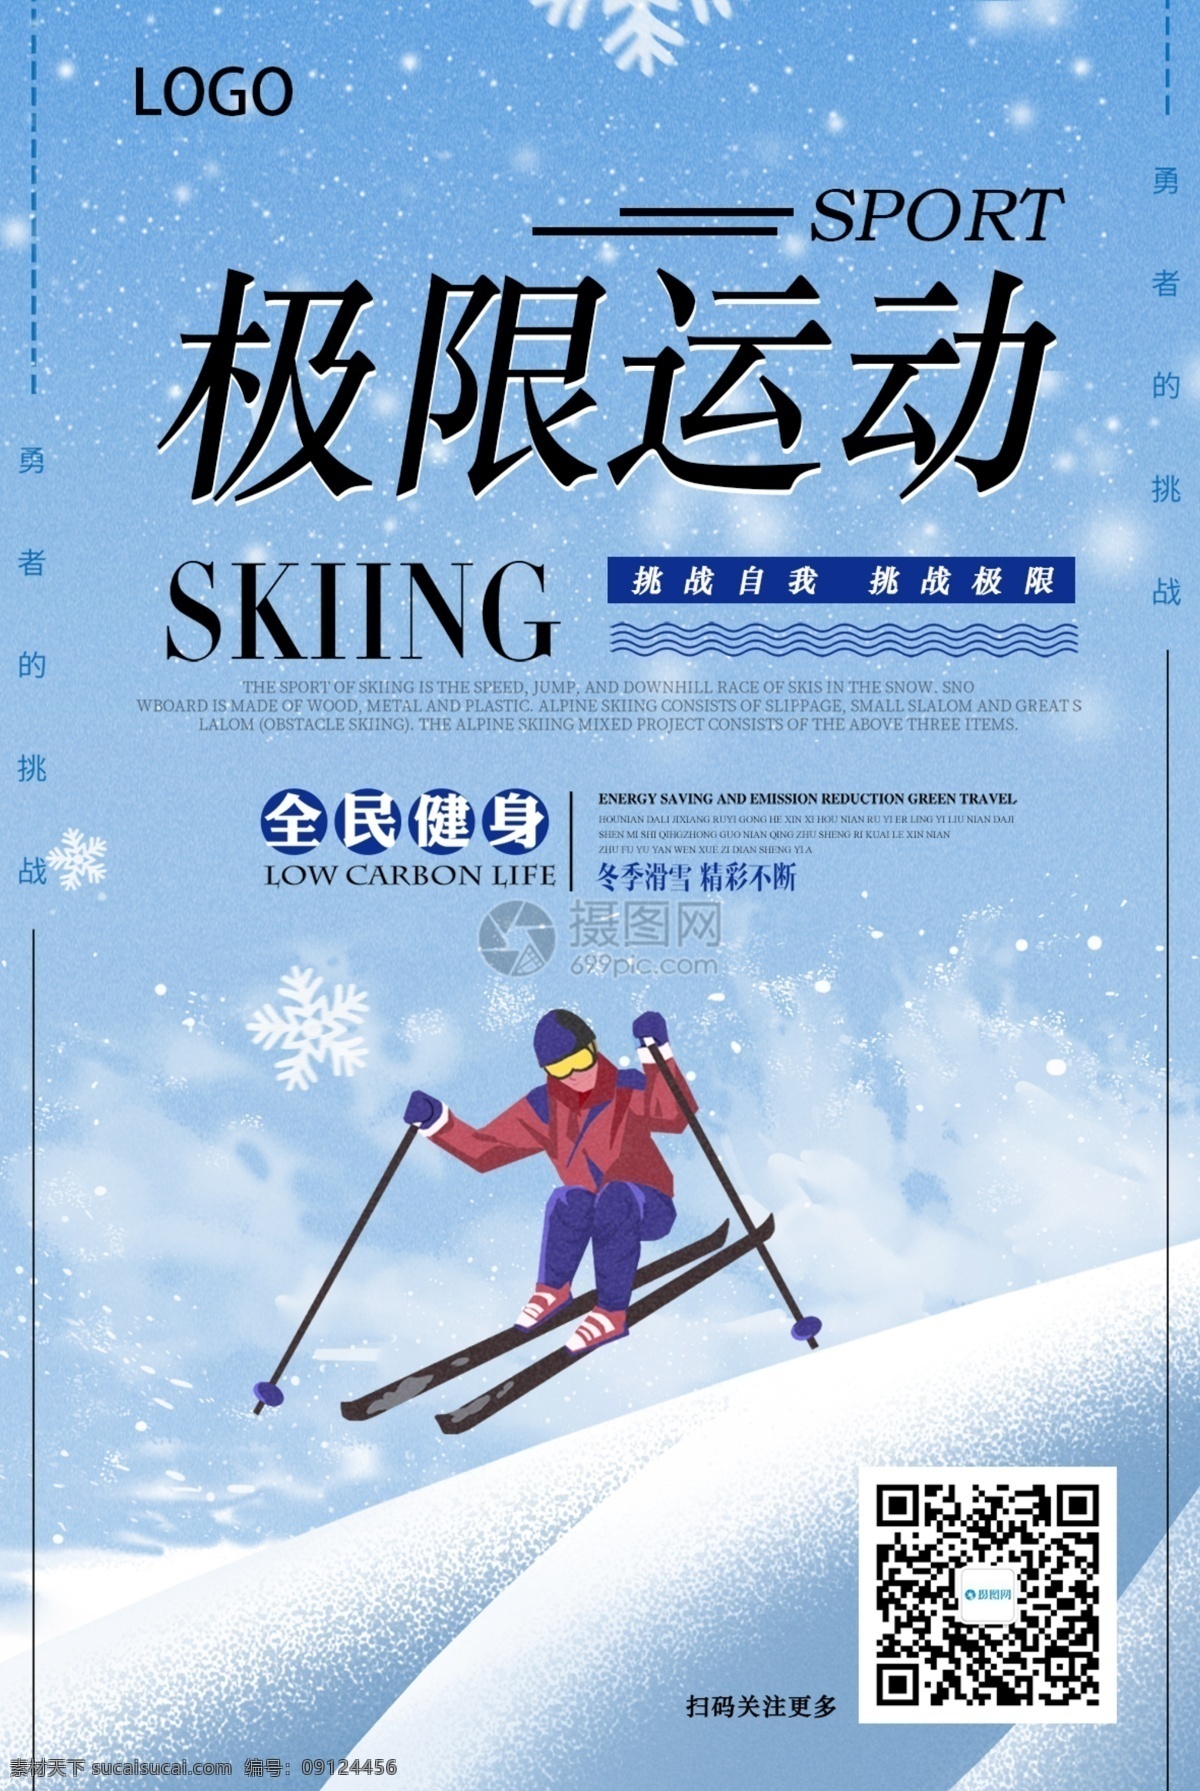 极限运动海报 极限 运动 挑战 全民健身 滑雪 勇敢者 健身 冬天 冬季运动